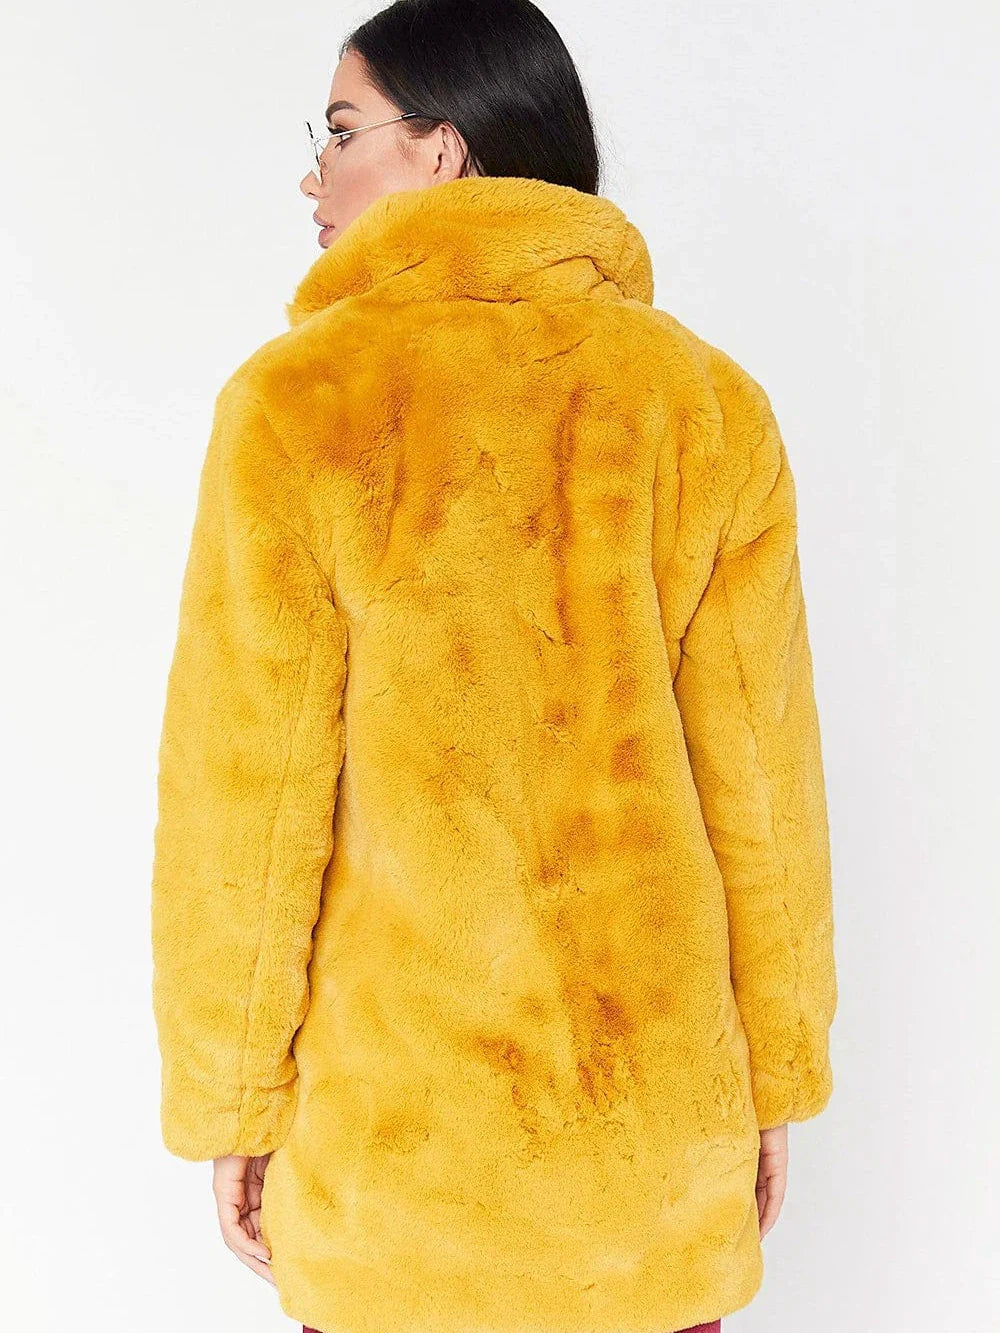 Faux Fur Christmas Coat for Women - Multiple Colors & Sizes / Warm